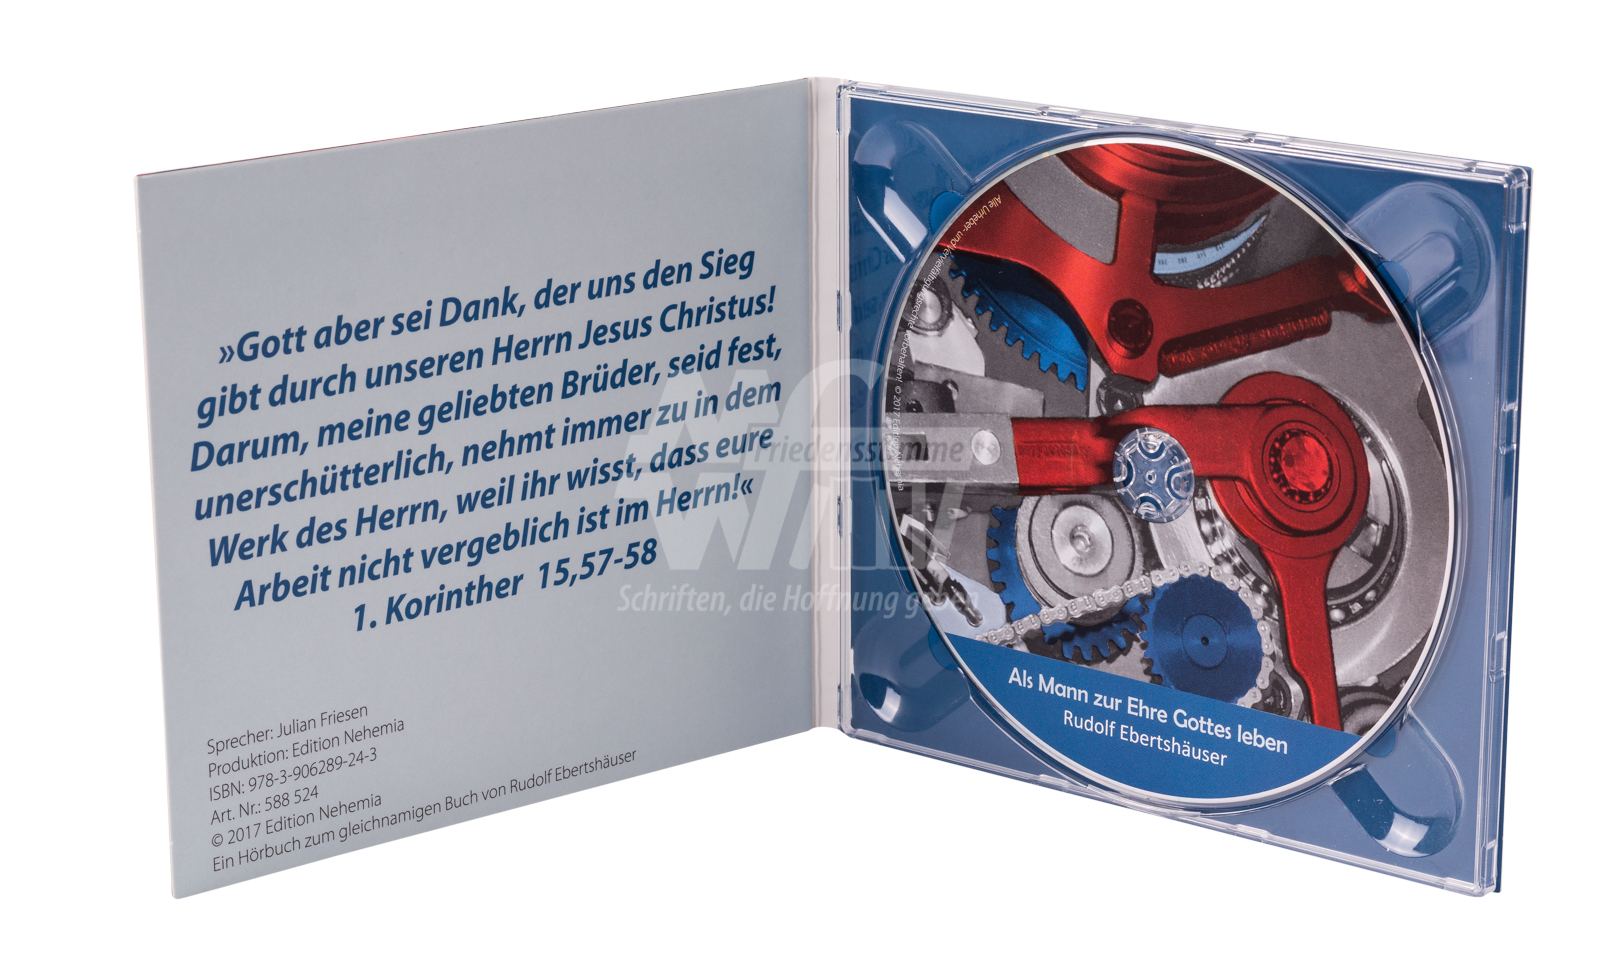 Hörbuch CD MP3 - Als Mann zur Ehre Gottes leben